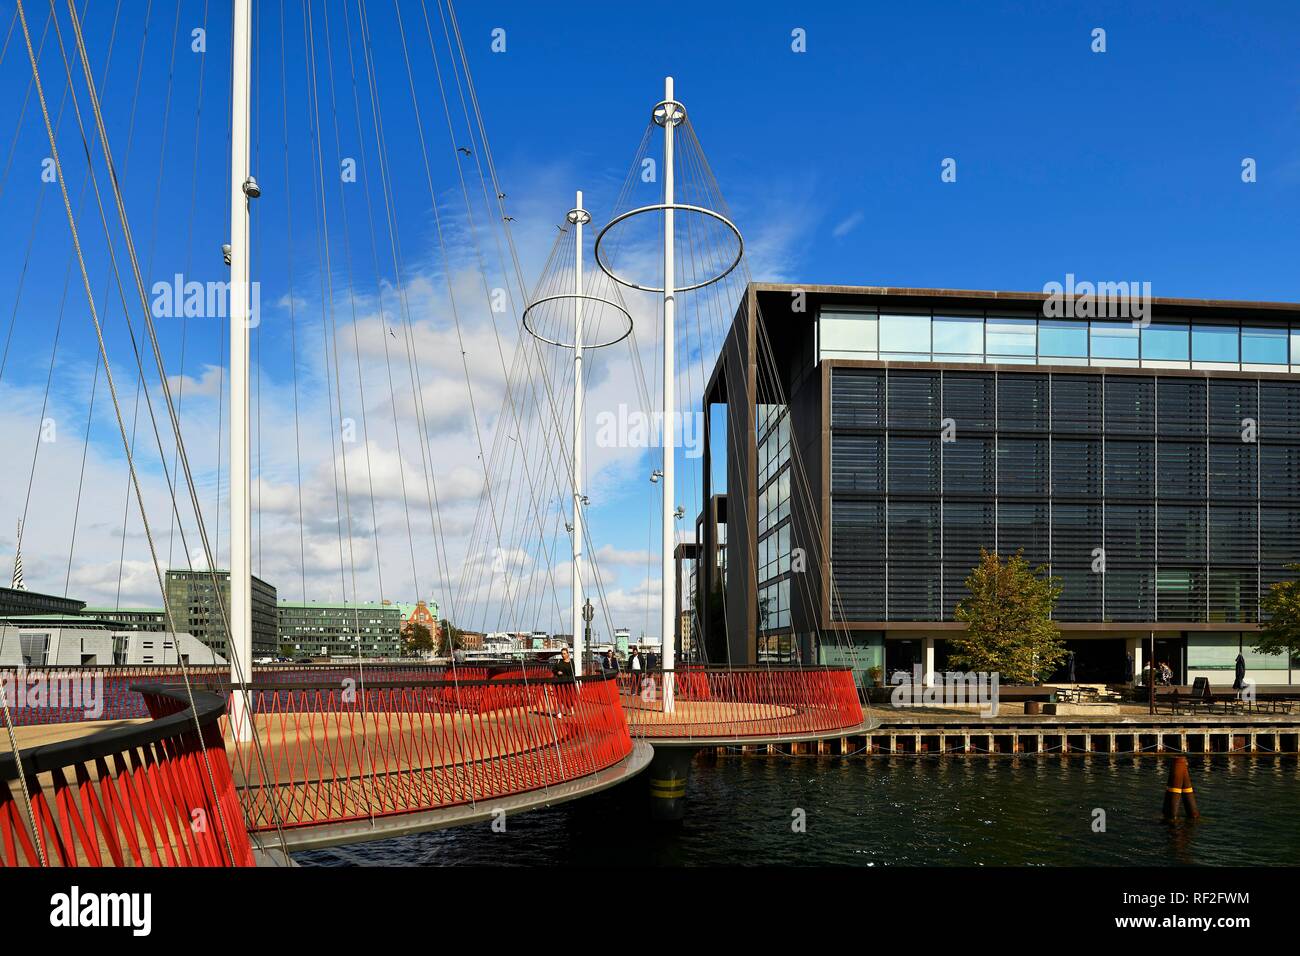 Cirkelbroen Puente, diseñado por el artista Olafur Eliasson, distrito de Christianshavn, Copenhague, Dinamarca Foto de stock